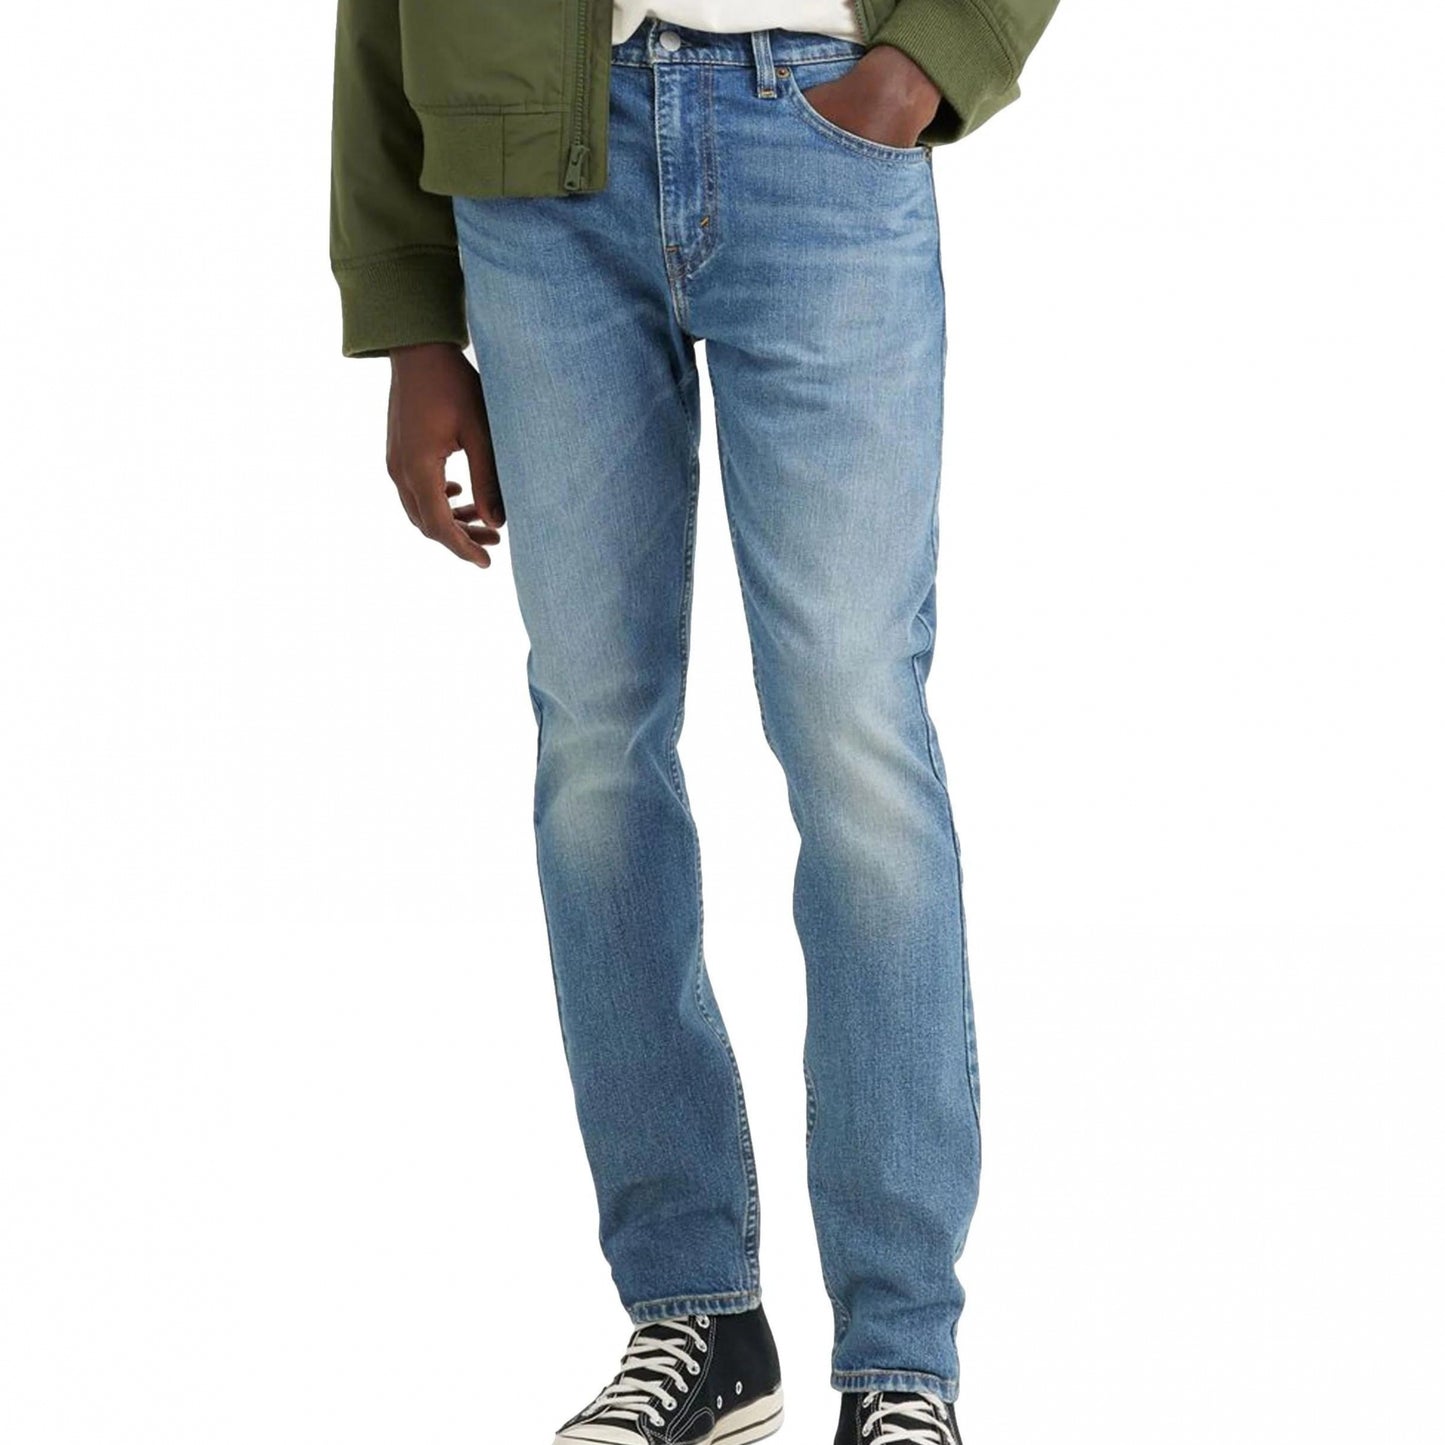 Jeans Levi's 512 Slim Taper Cool as a Cucumber ADV